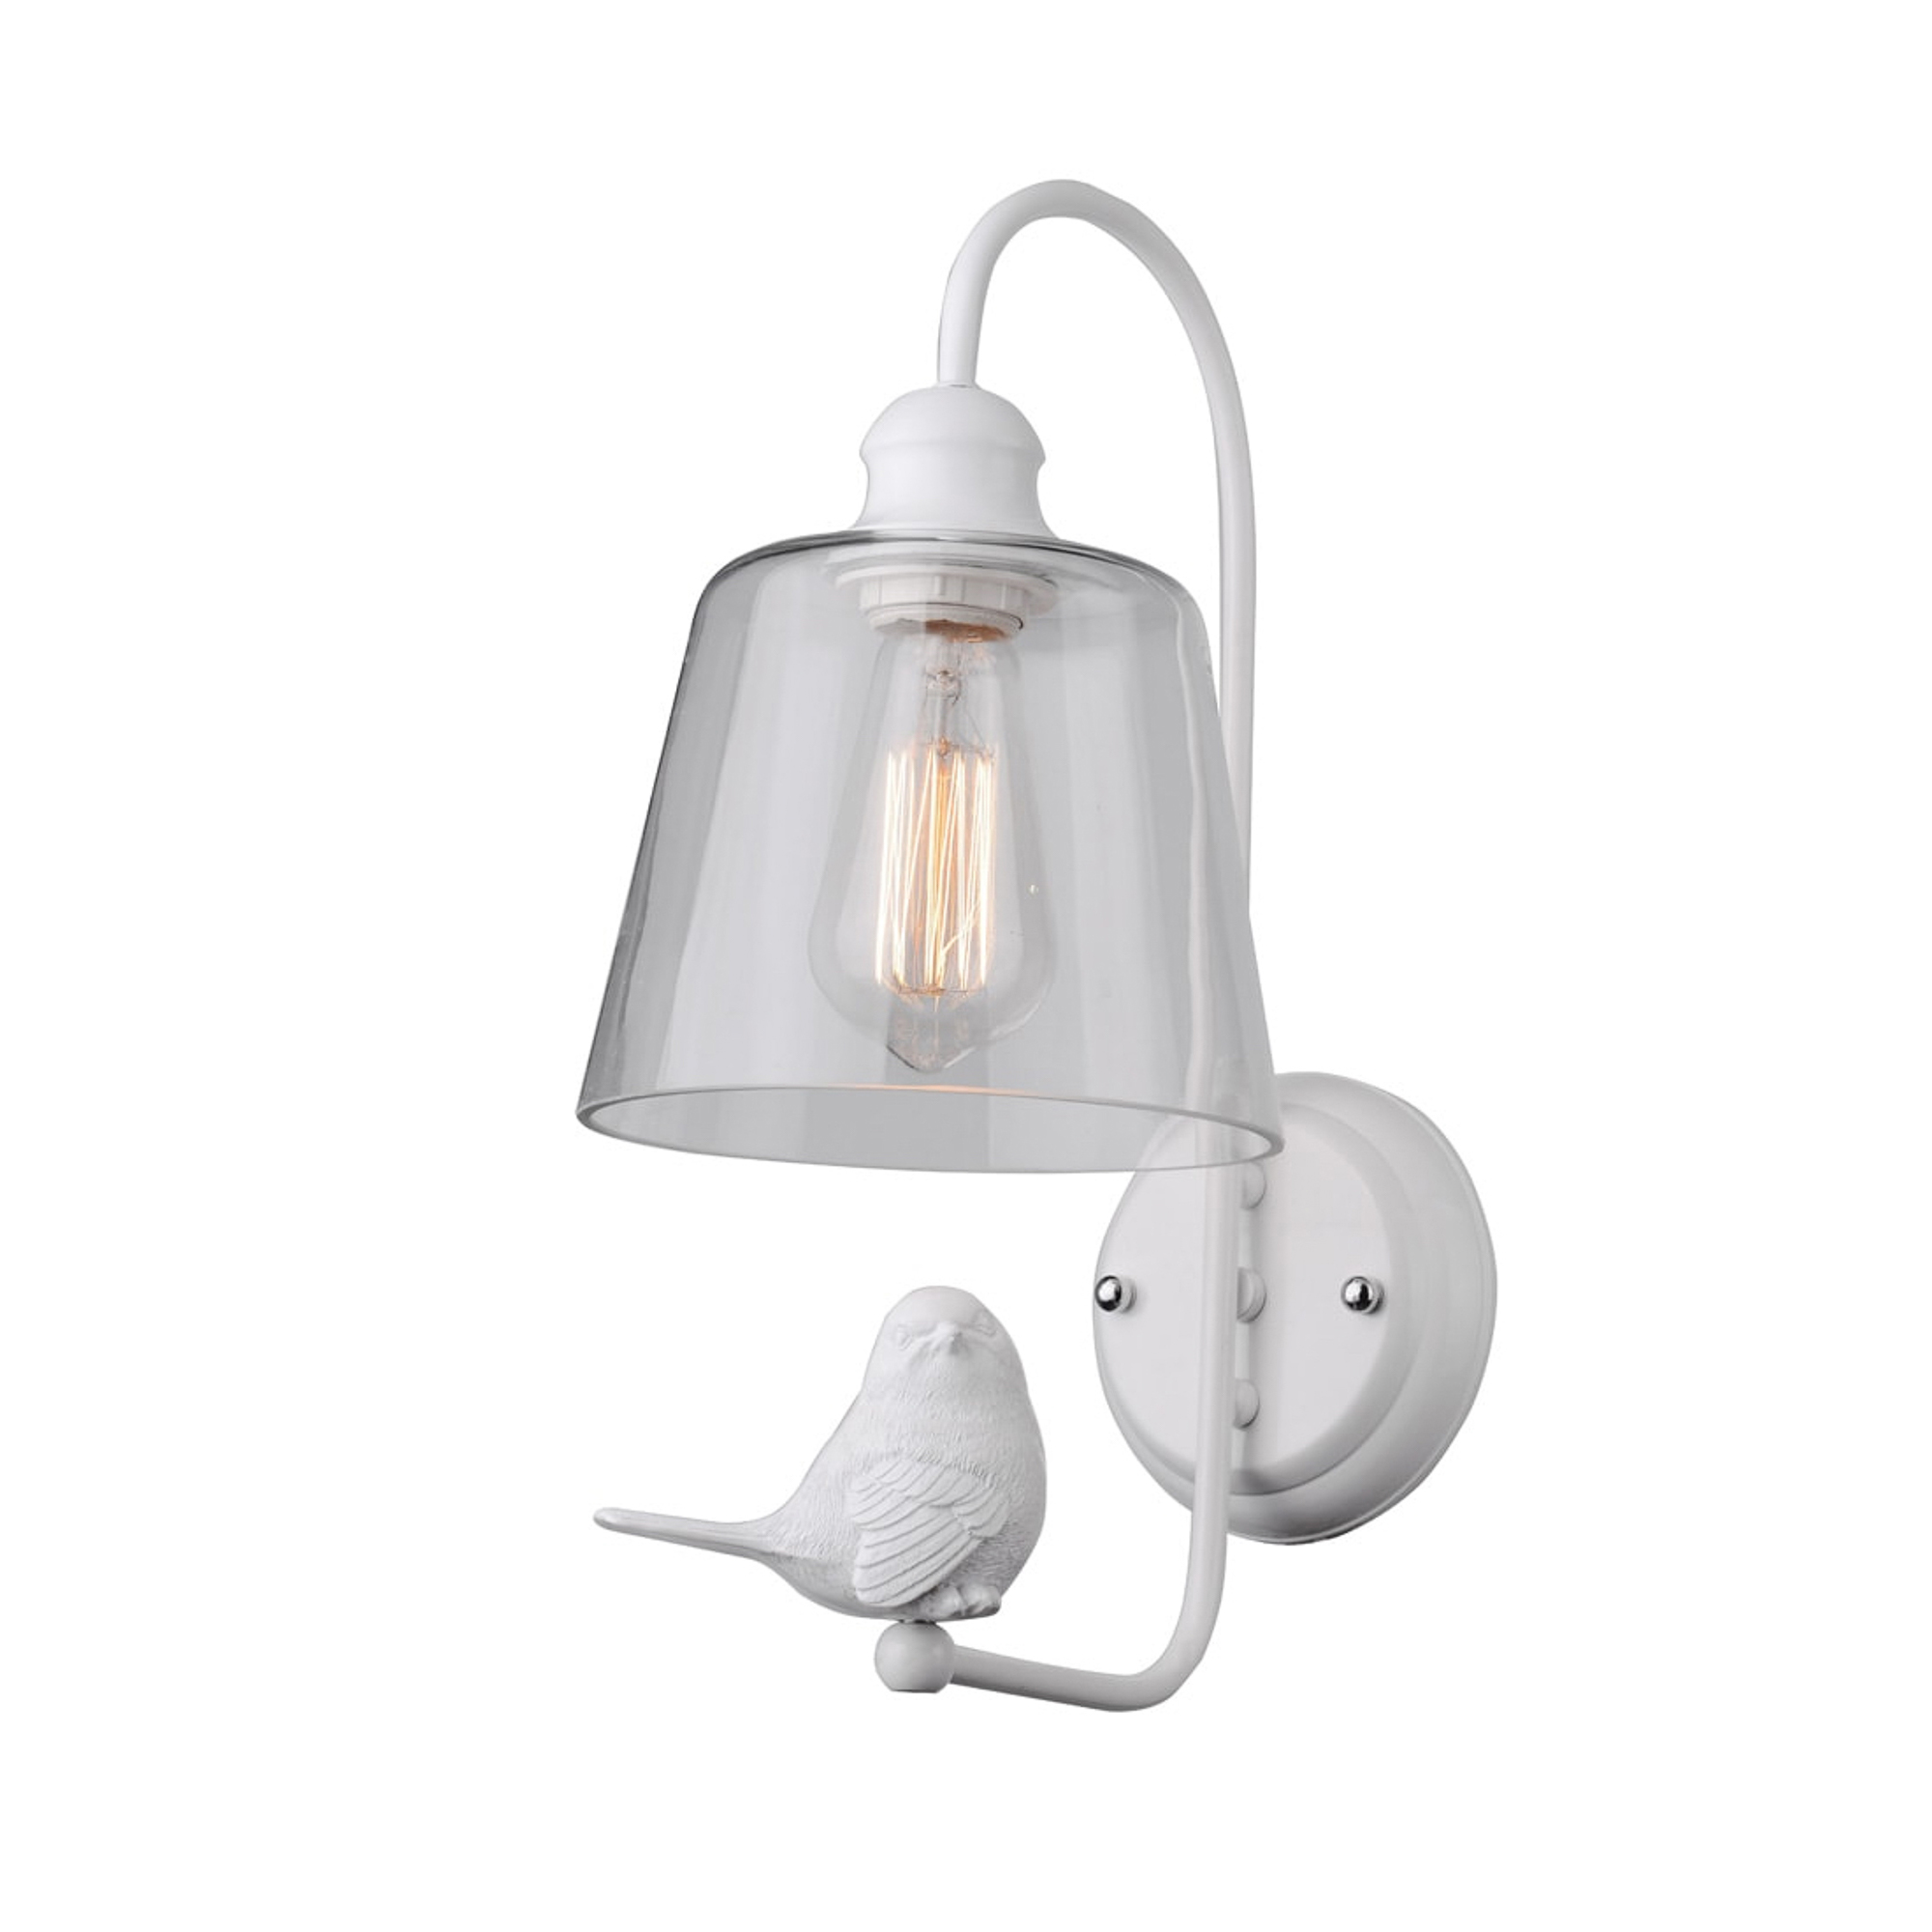 Бра Arte Lamp Passero A4289AP-1WH светильник настенный tk lighting hilton 4770 e27 1х15вт 280х200х280 мм цвет белый